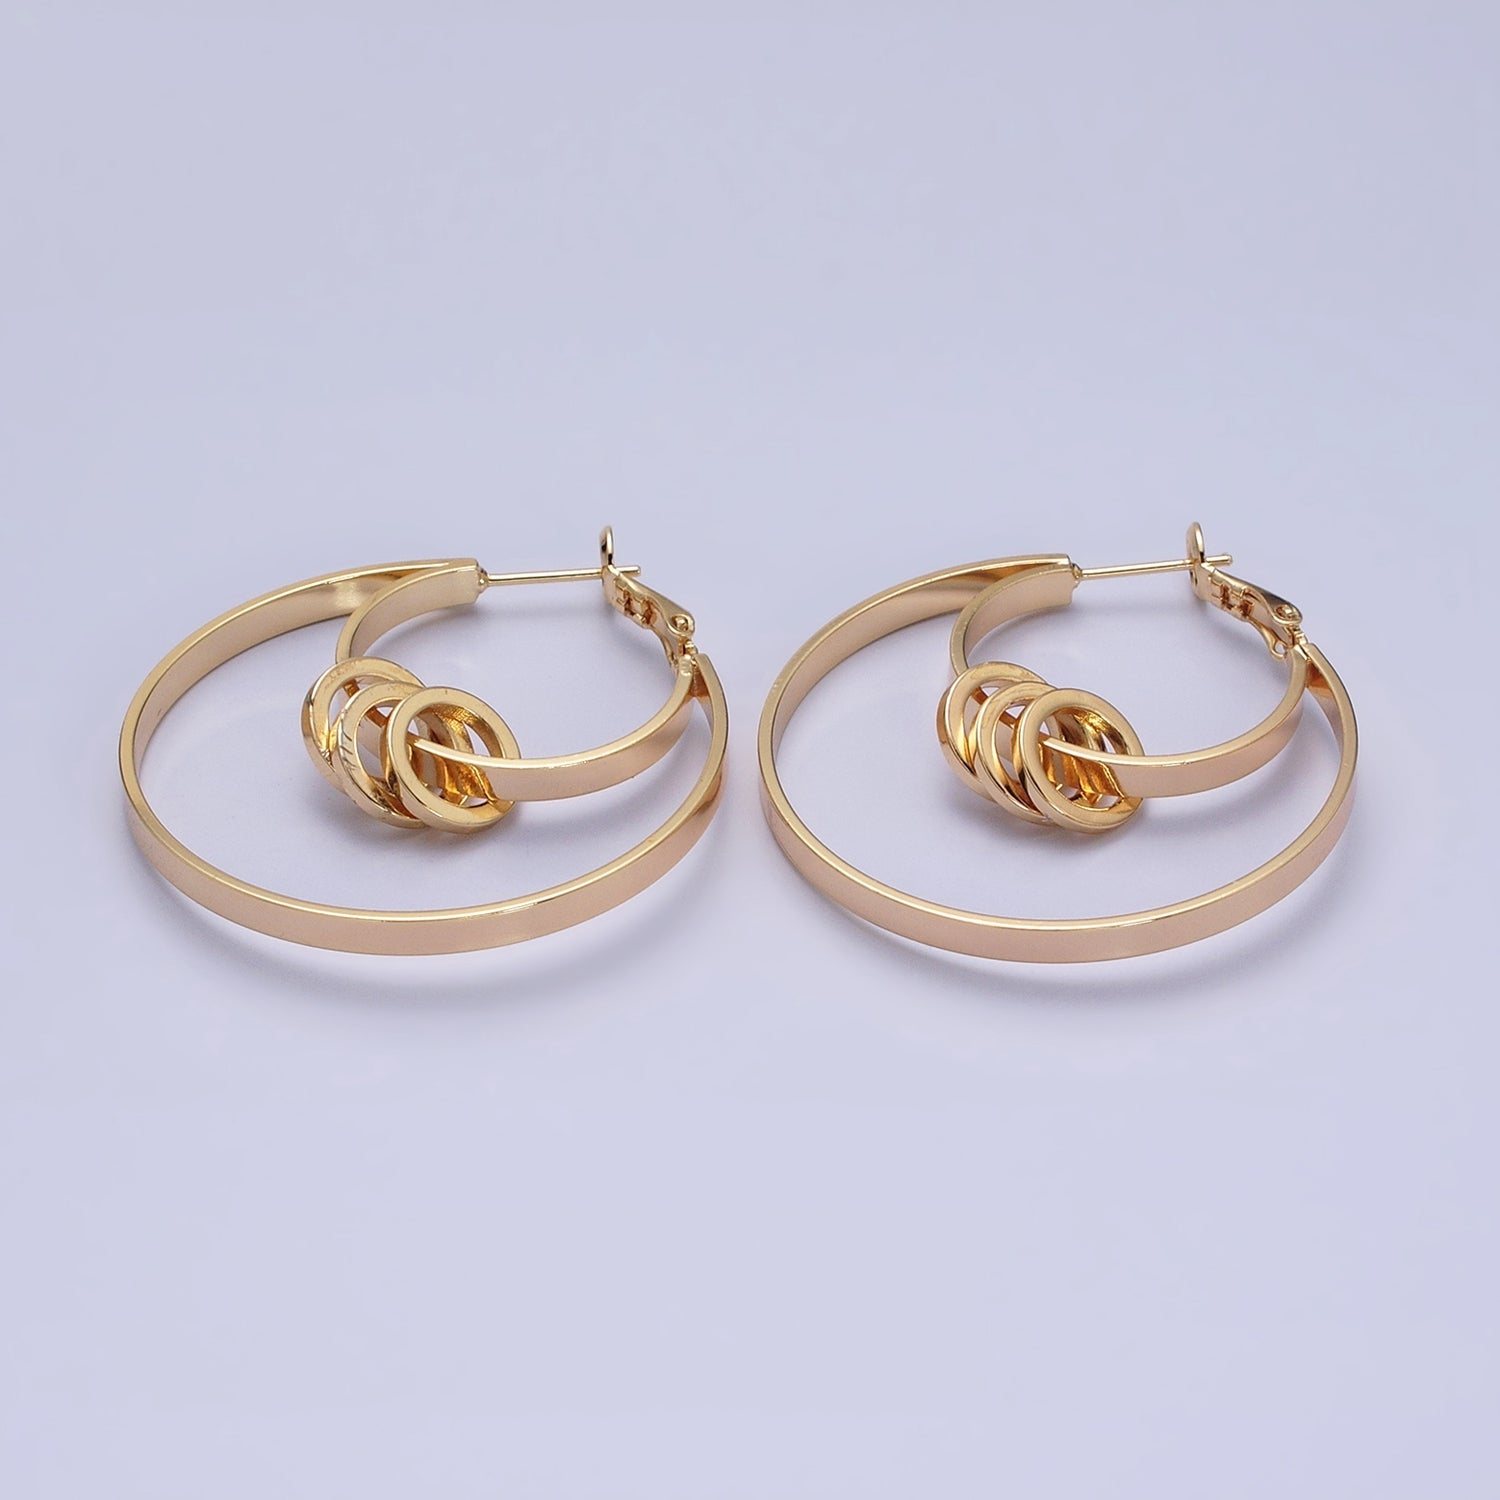 Double Hoop Earrings, Big Gold Hoops, Statement Earrings Silver Round Modern Hoop Earring AE051 AE052 - DLUXCA